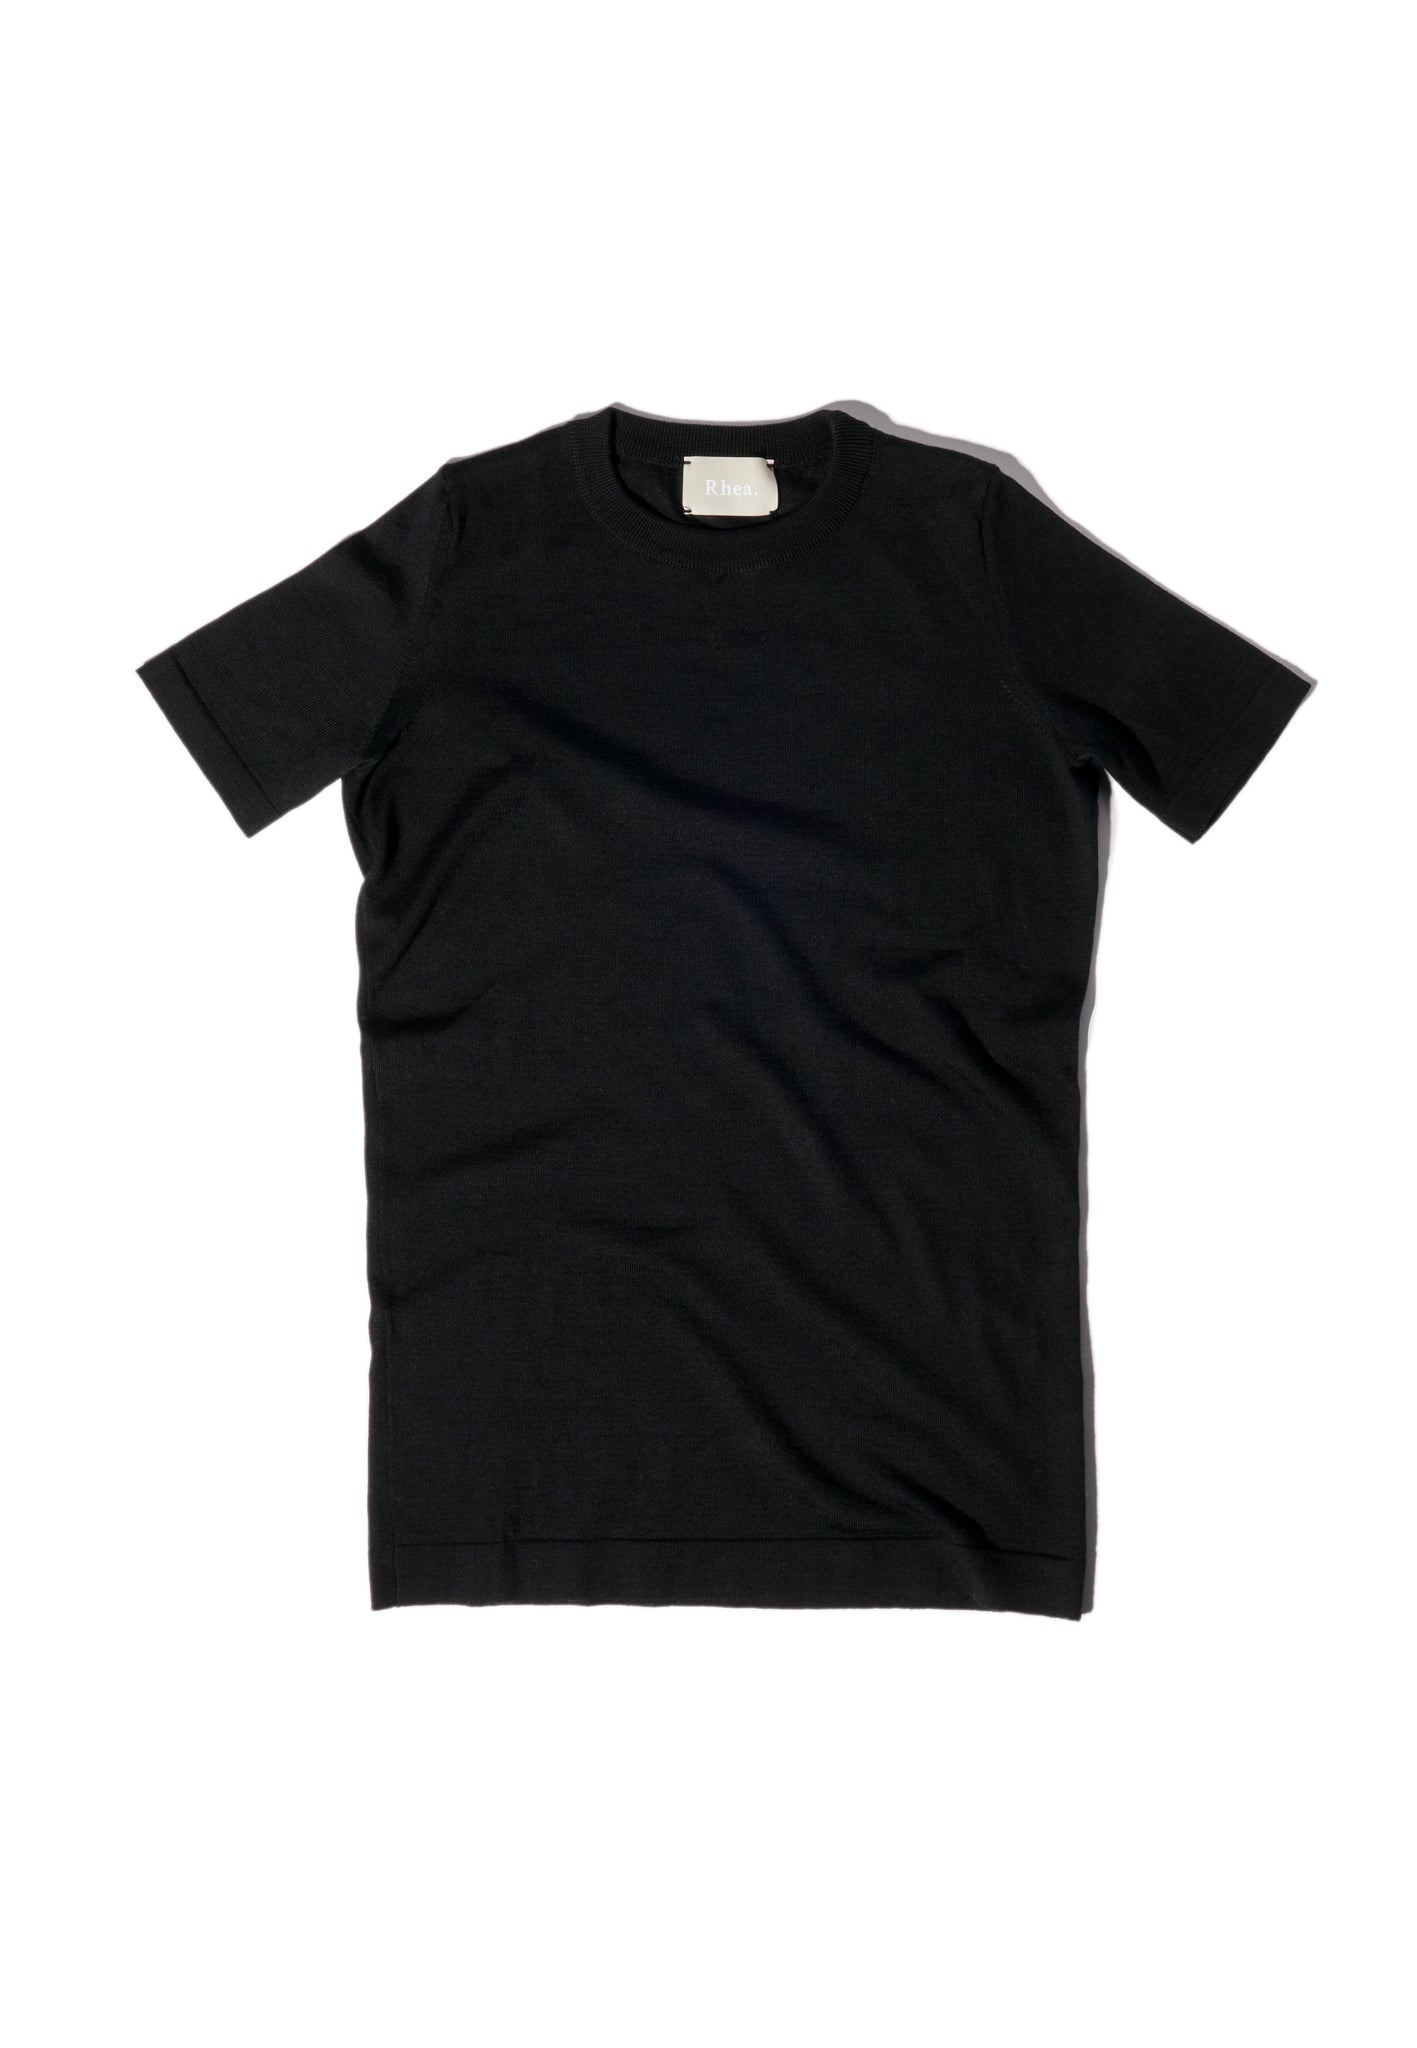 T-Shirt. Black